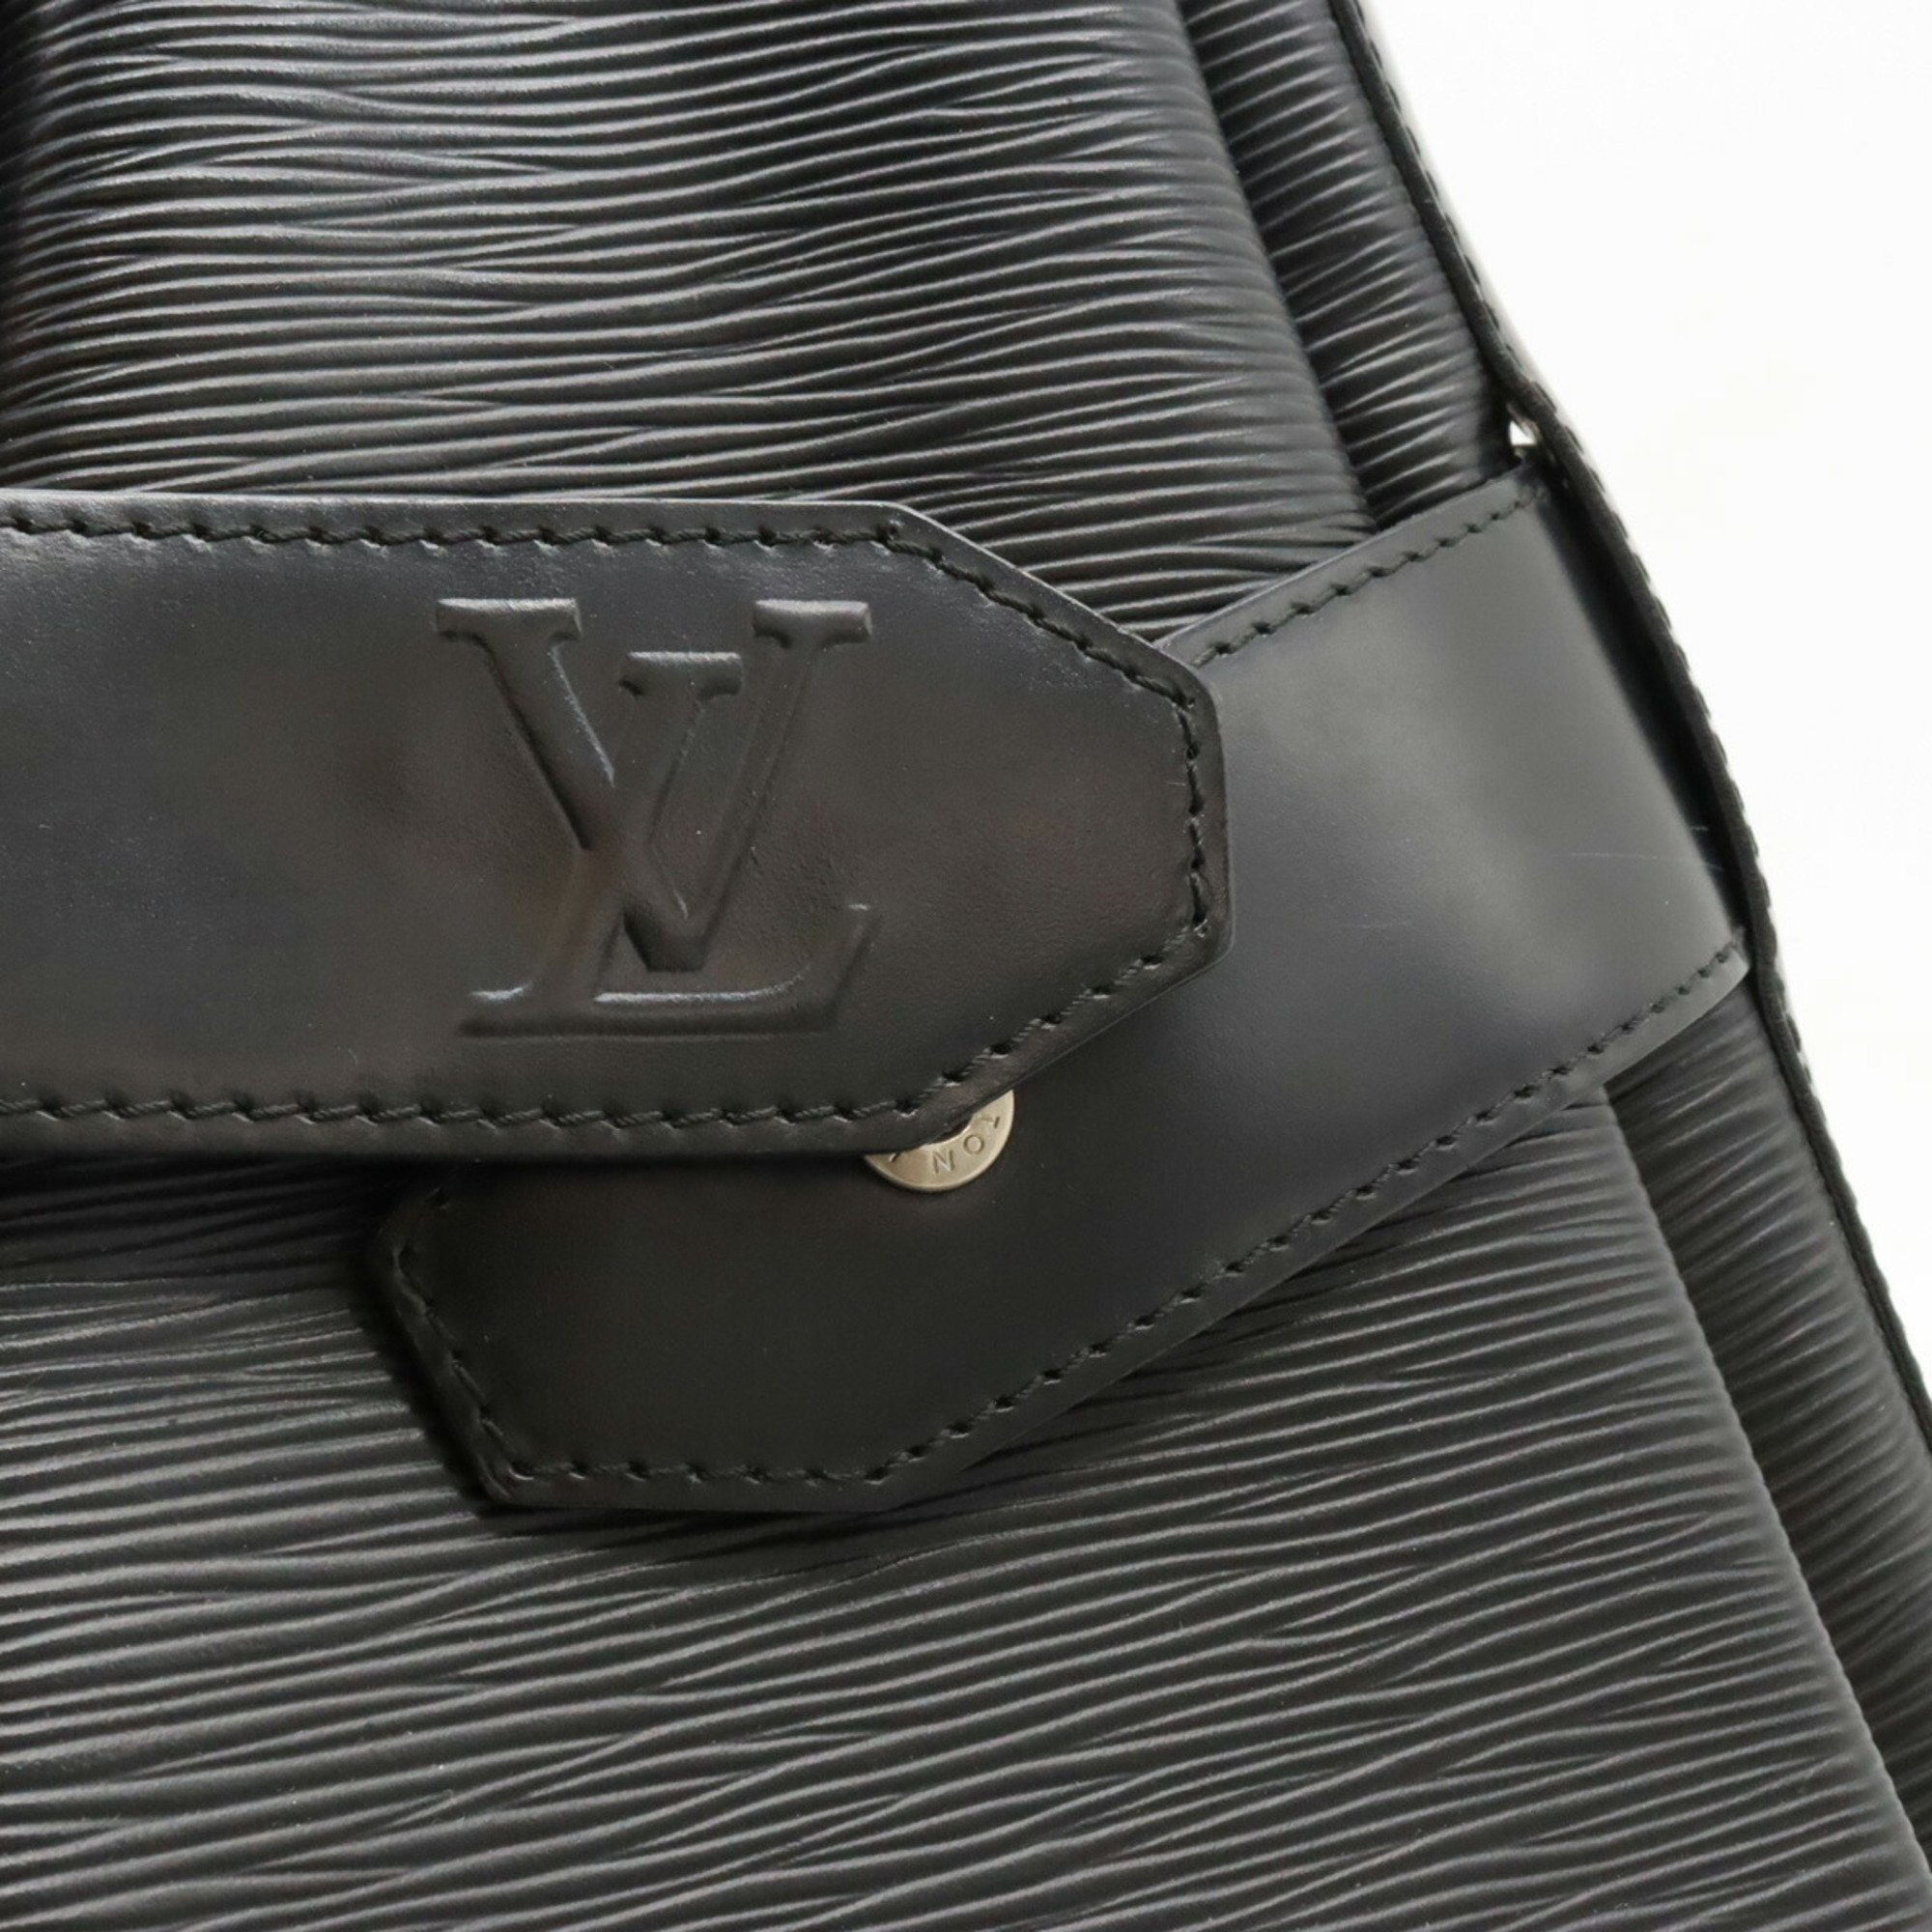 LOUIS VUITTON Epi Sac de Paul PM Shoulder Bag Leather Noir Black M80157